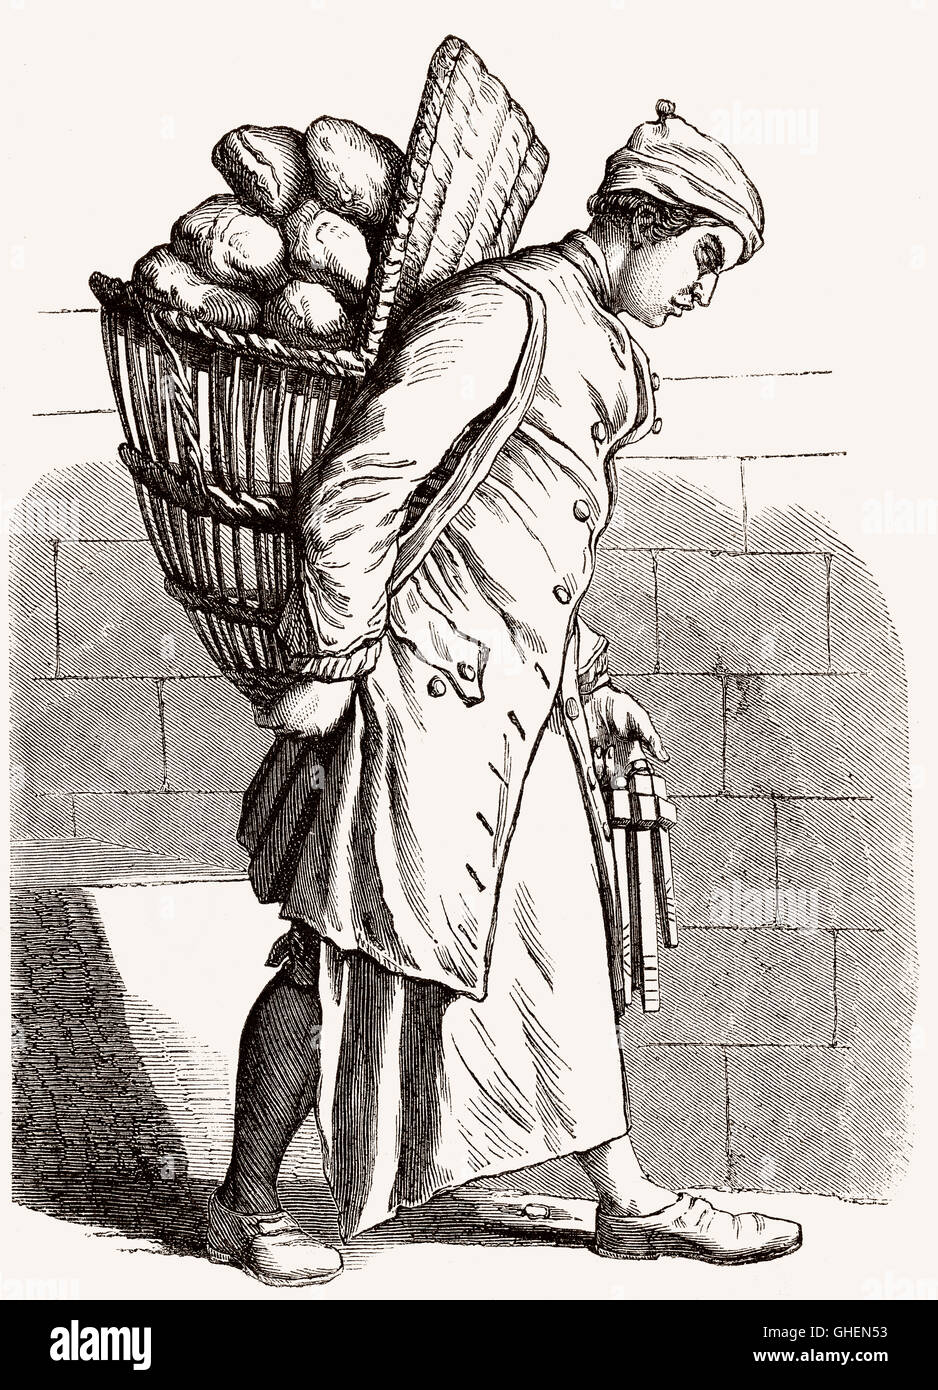 Un boulanger dans le 18e siècle Banque D'Images